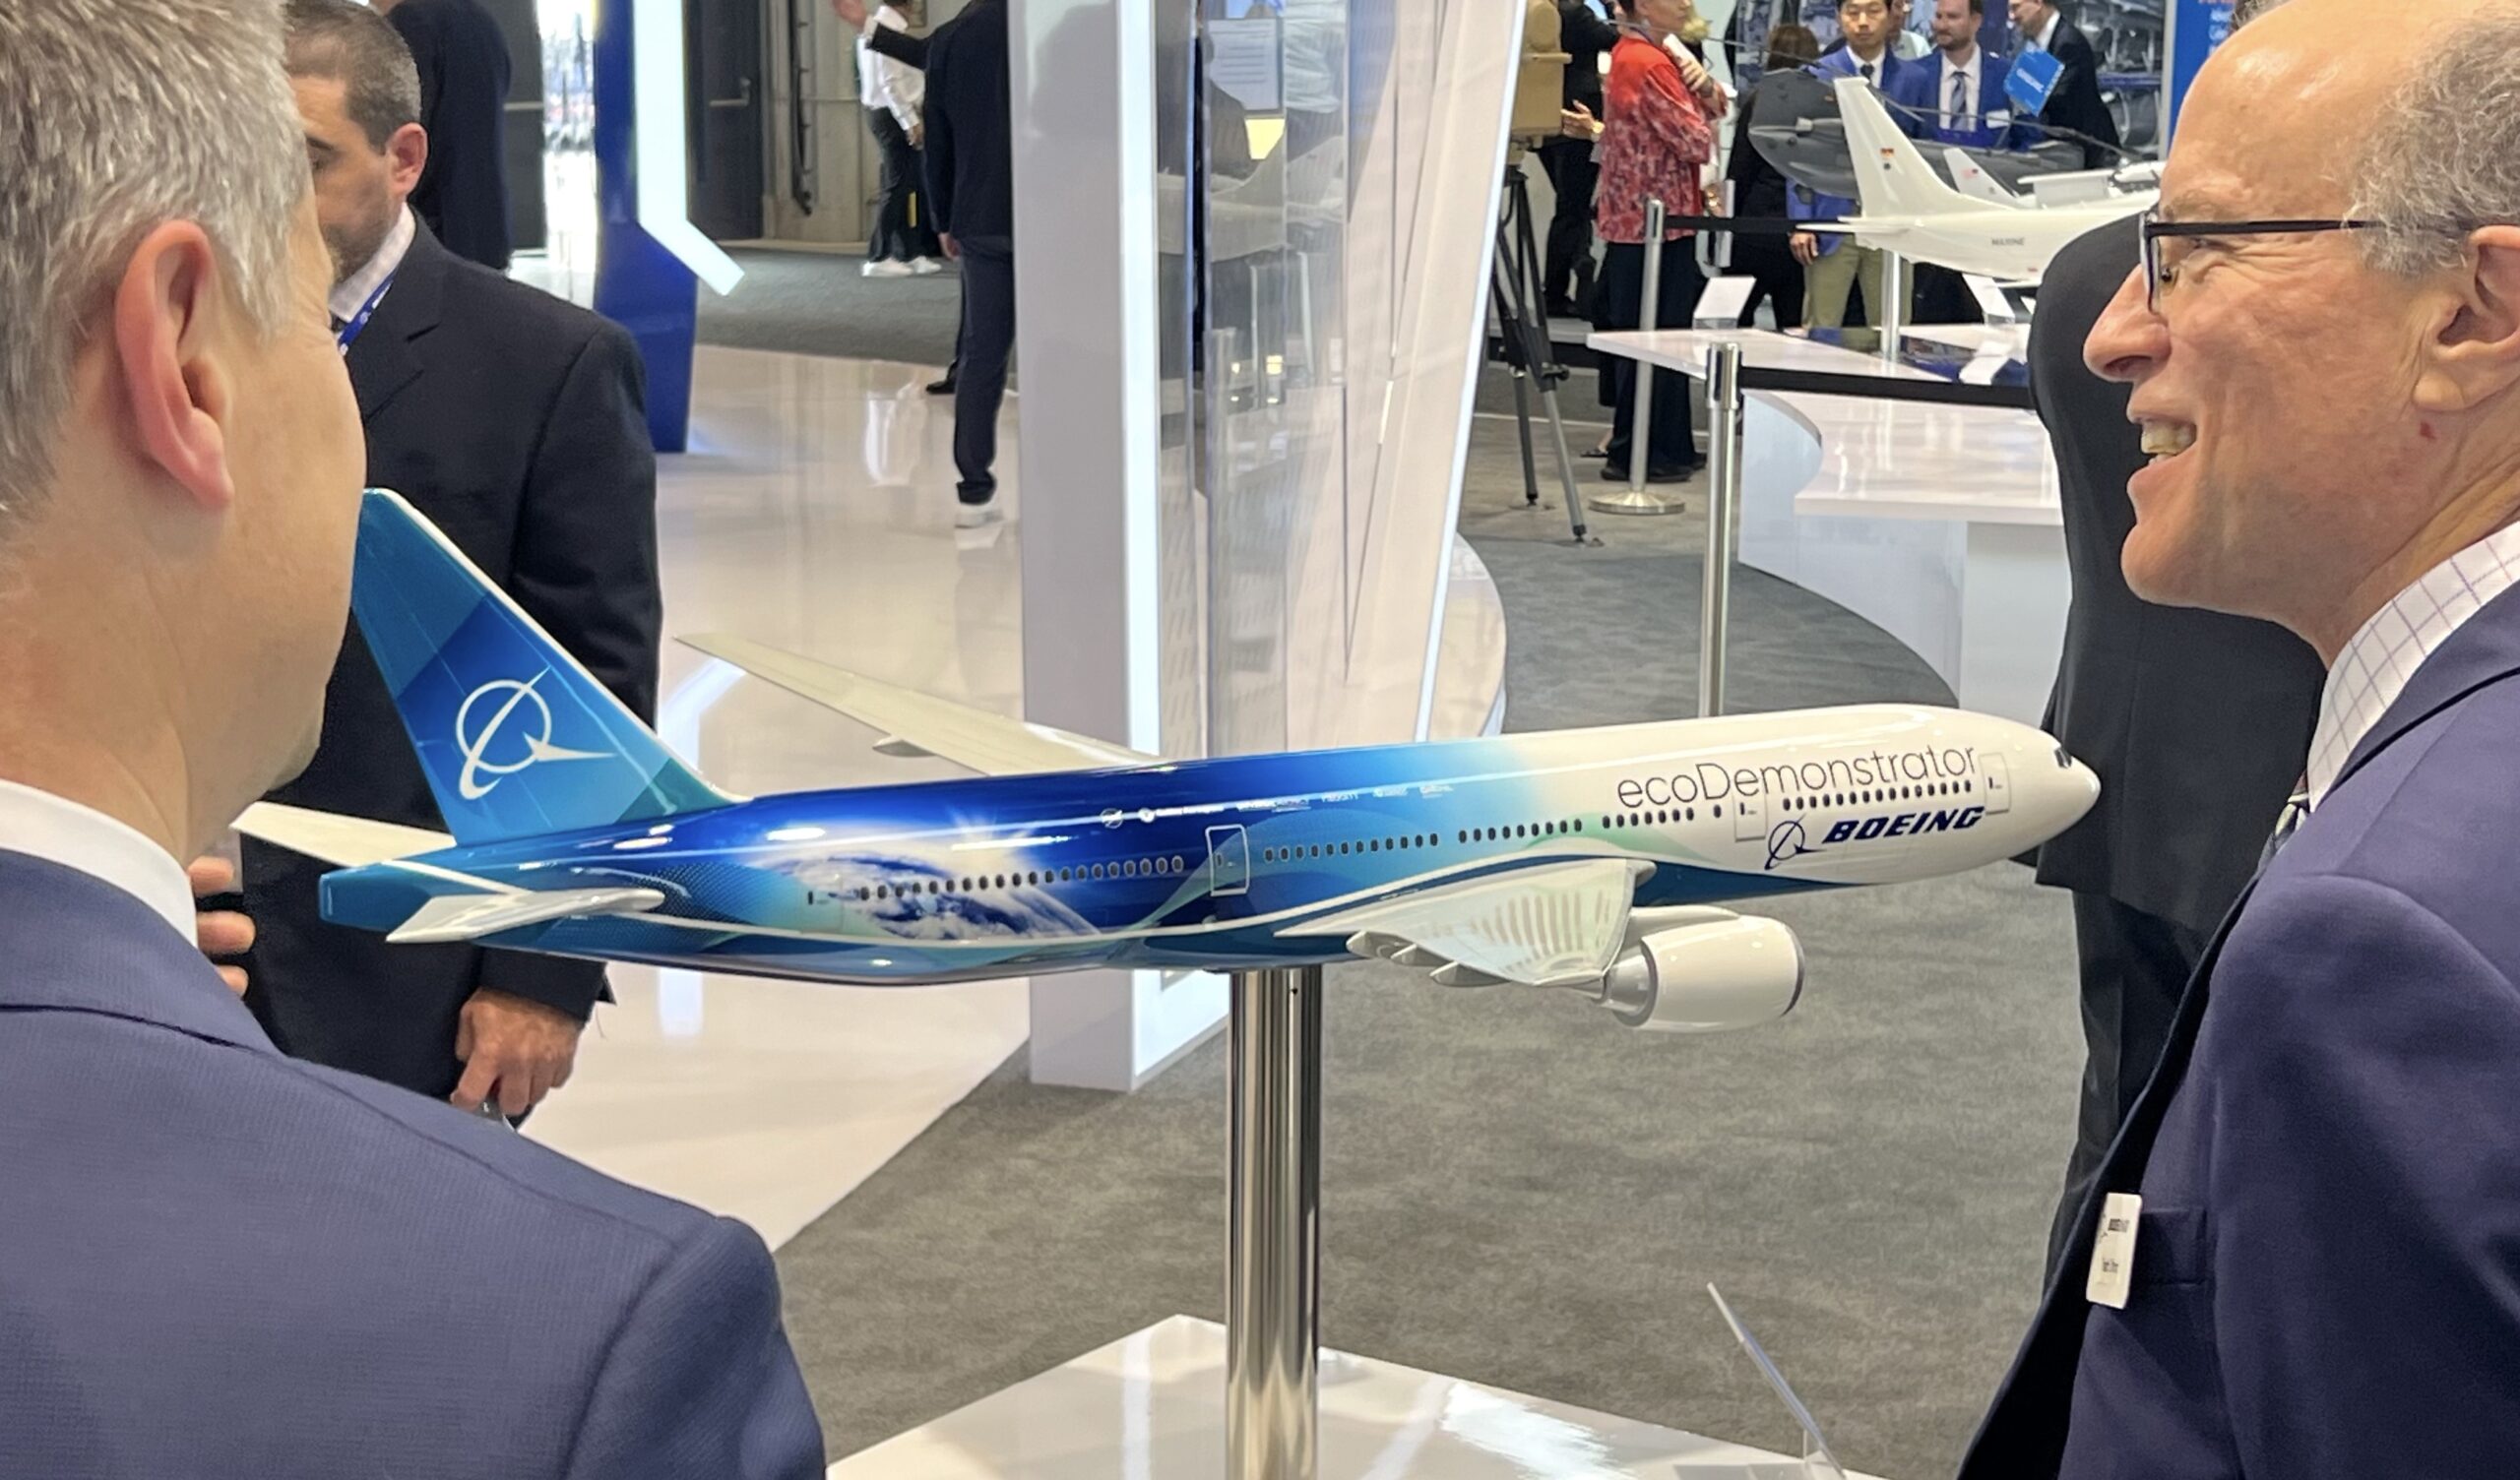 klimaneutral: Boeing arbeitet auf vielen Ebenen daran, Klimaneutralität in der Luftfahrt zu ermöglichen. Der EcoDemonstrator ist nur ein Baustein.